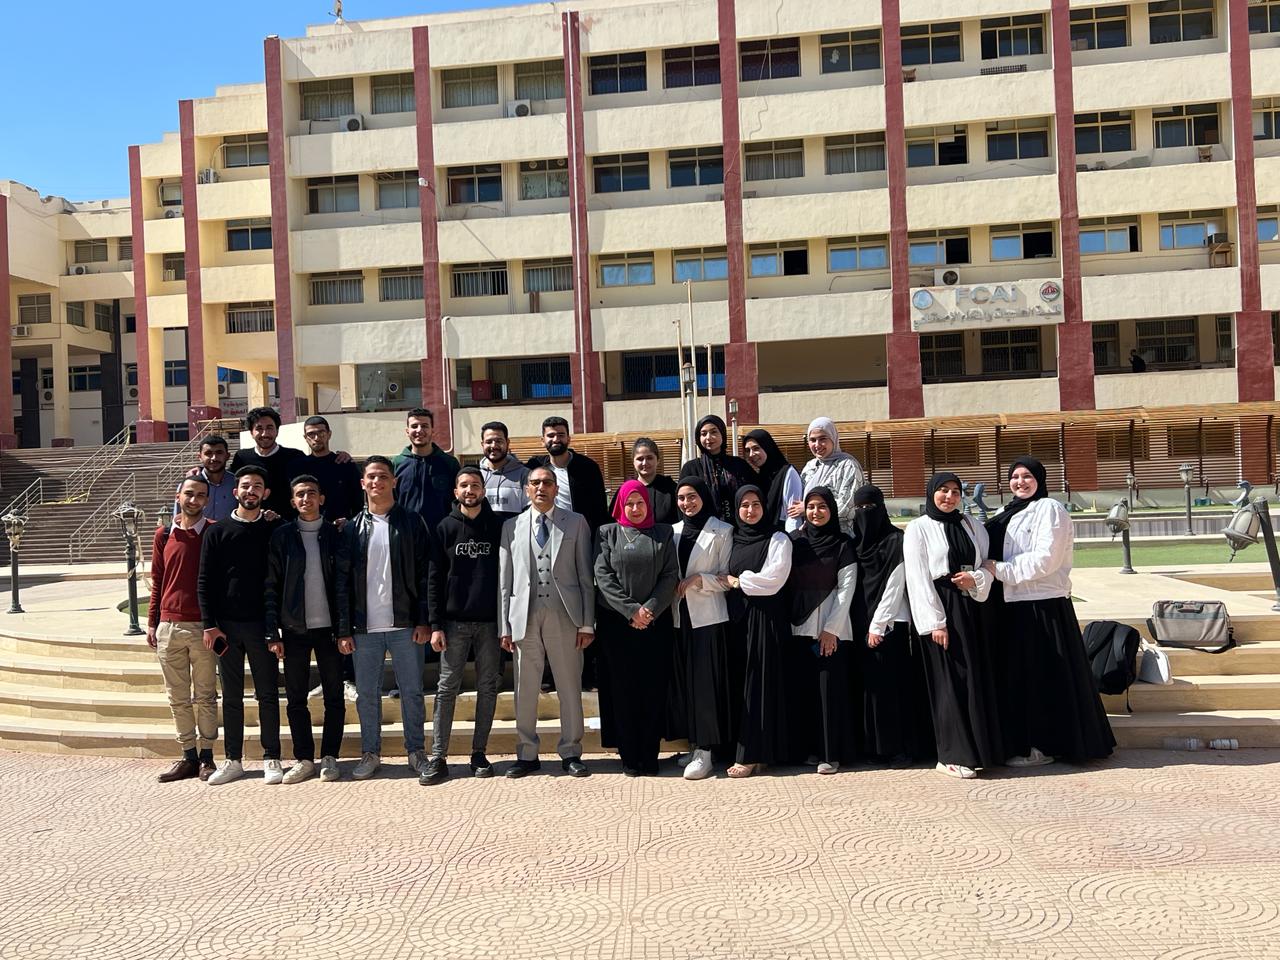 فوز كلية الحاسبات والذكاء الإصطناعي في مسابقة: Industrial Graduation Projects (IGP) التي نظمتها وزارة التعليم العالي المصرية وصندوق دعم المبتكرين والنوابغ